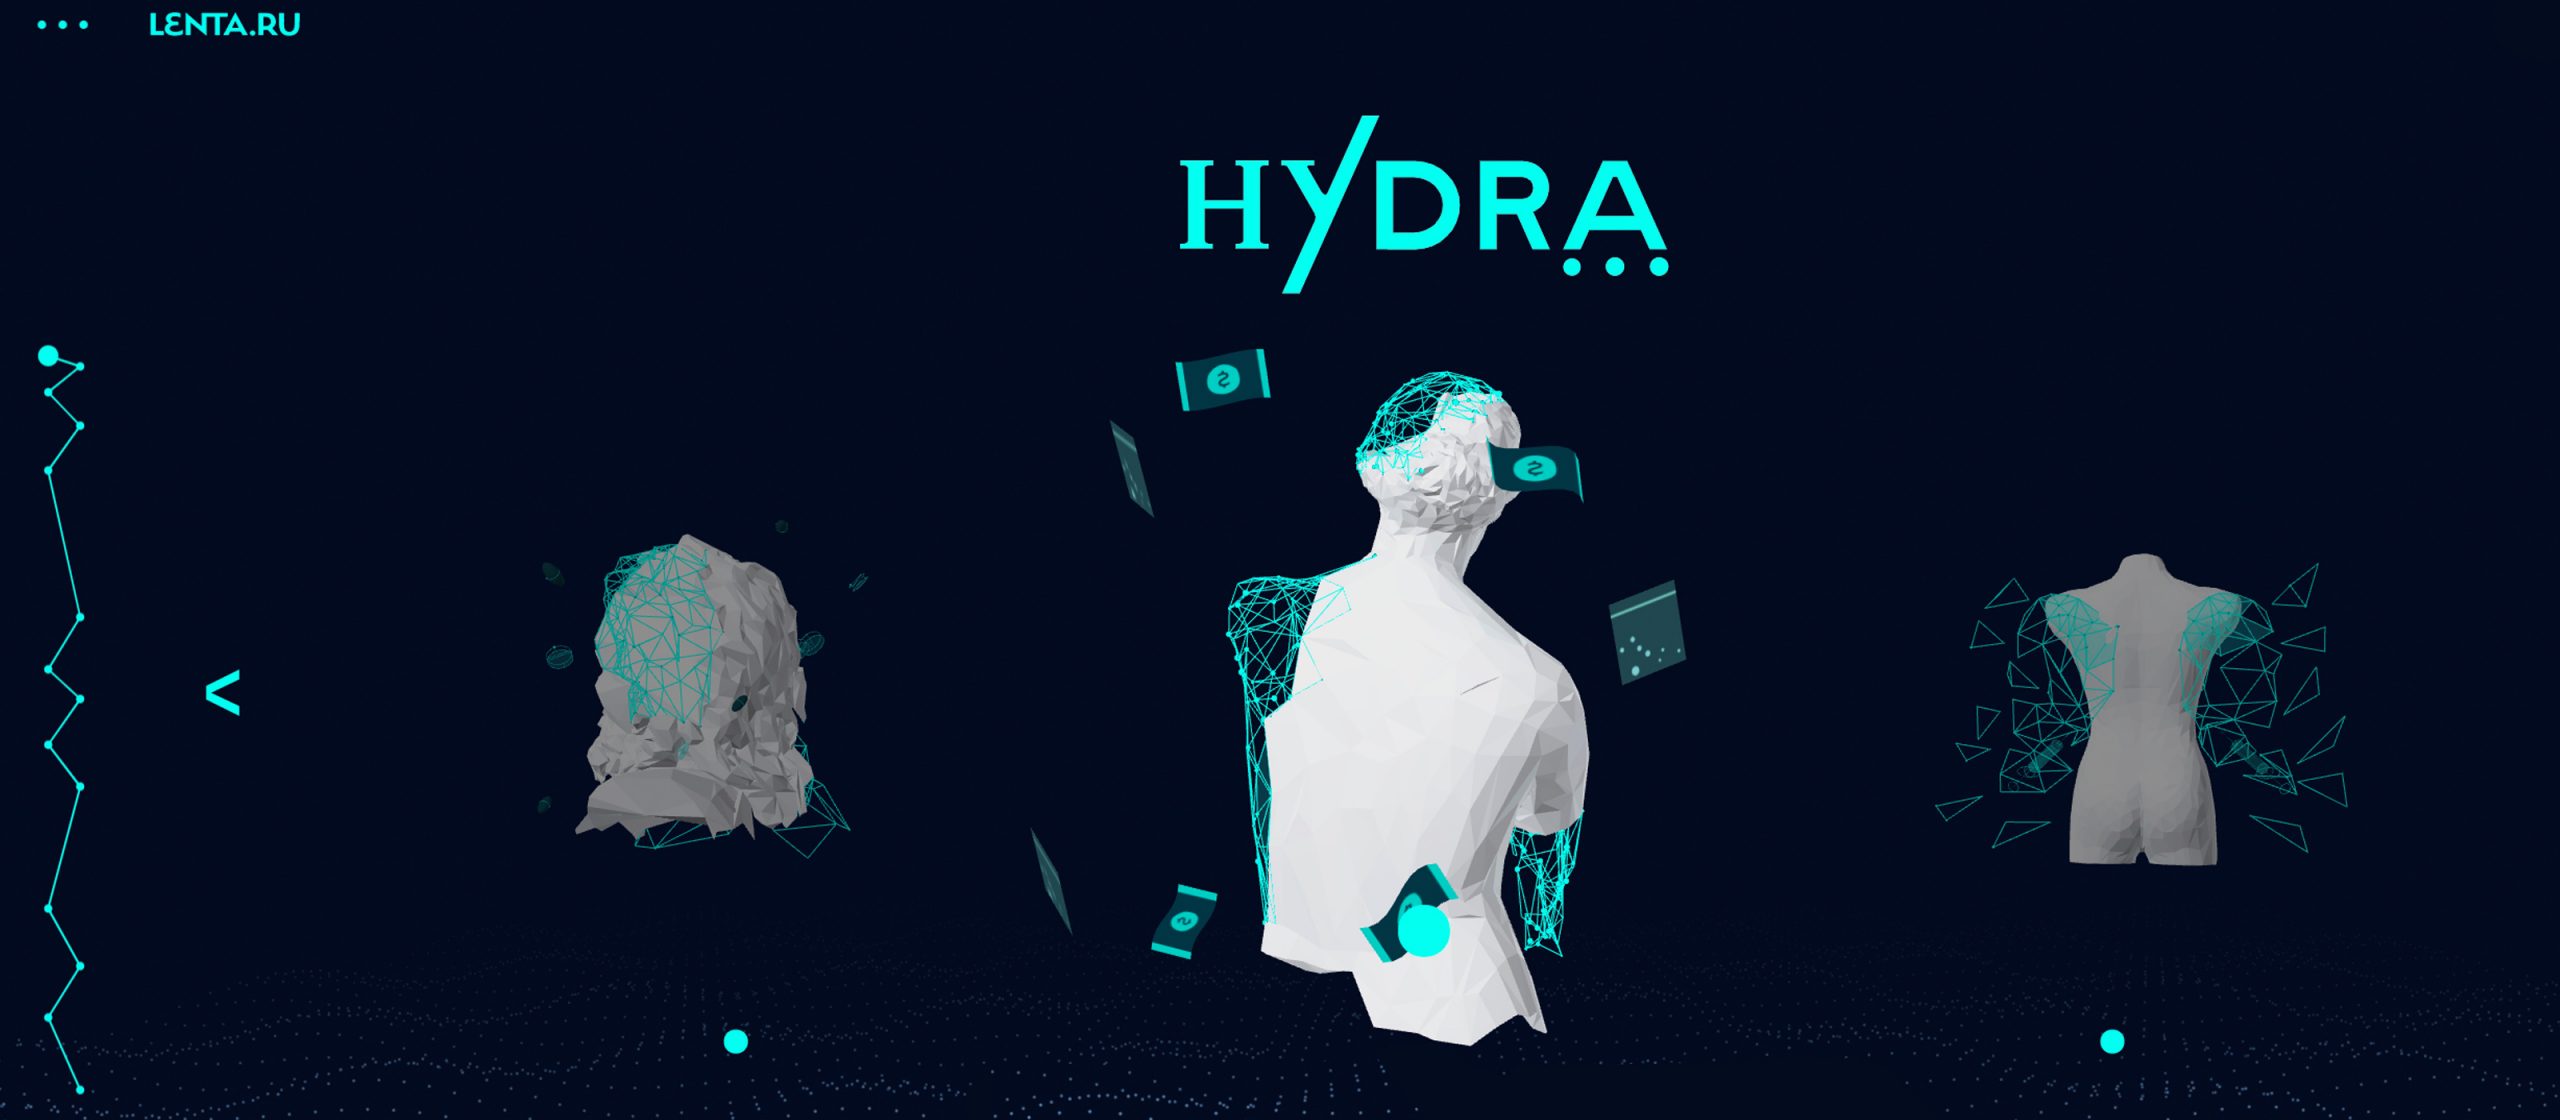 Darknet ru hudra скачать тор браузер для андроид бесплатно с официального сайта гирда